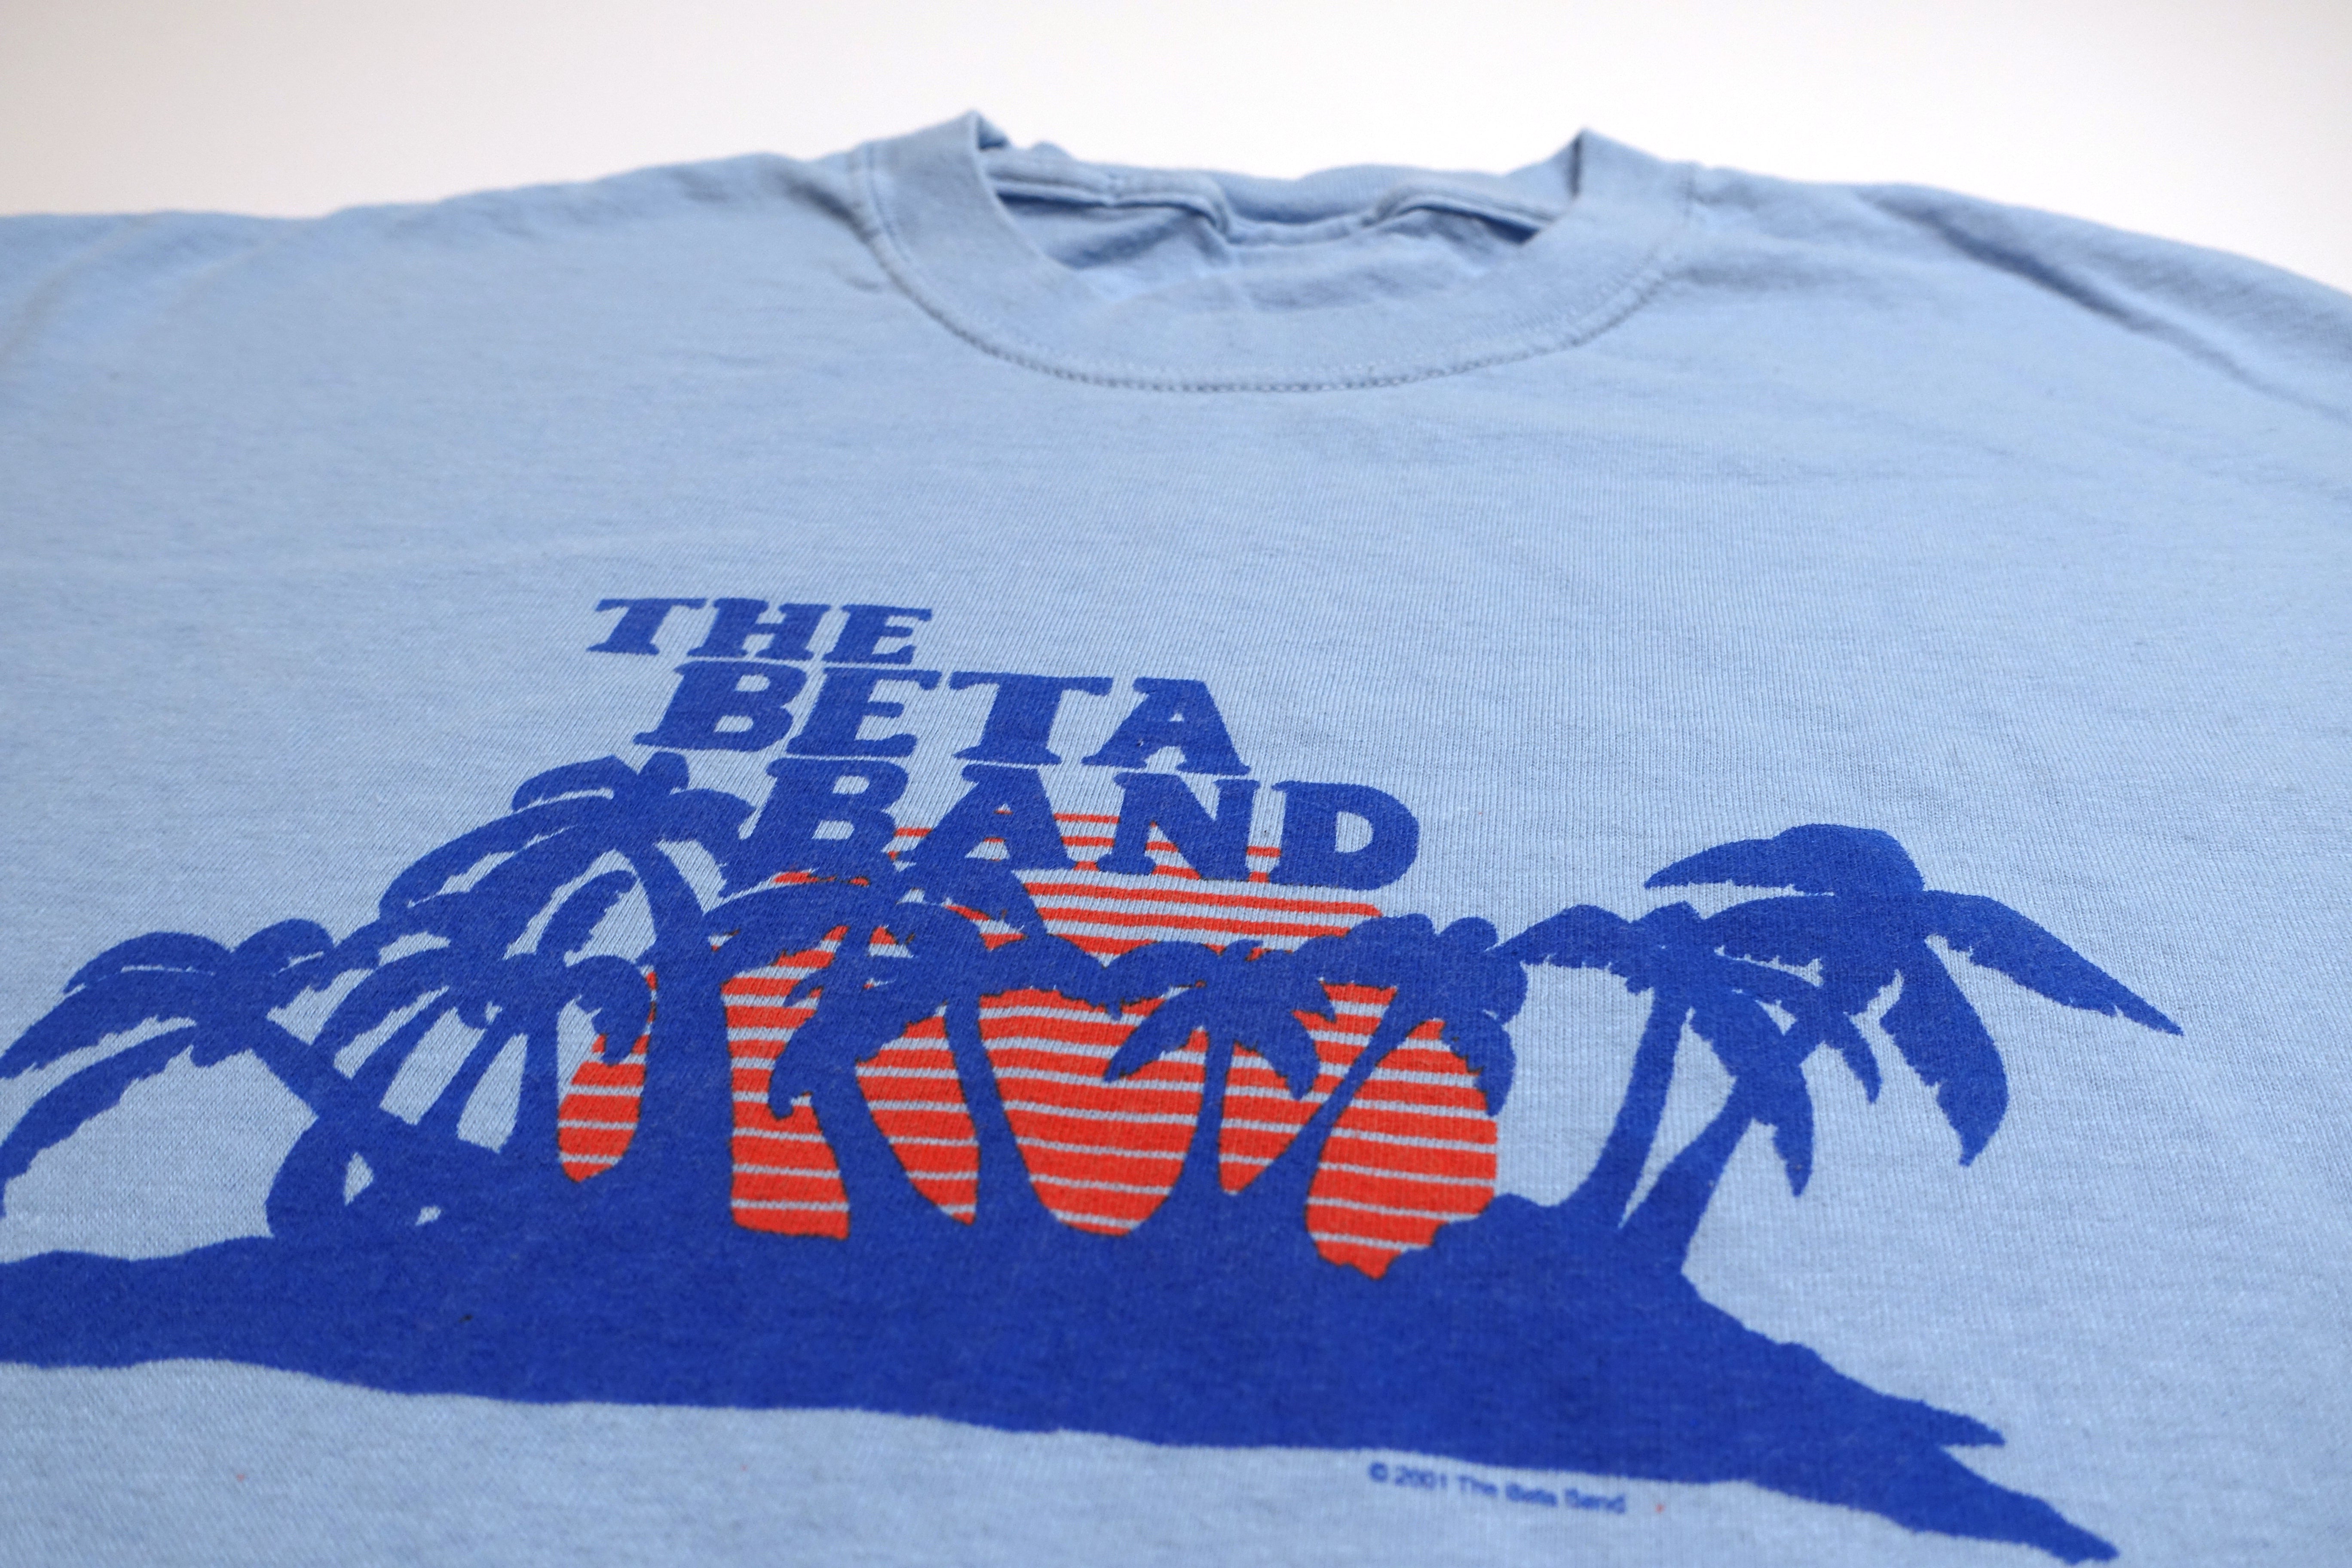 Beta Band - Tropical Paradise / Hot Shots II 2001 Tour Shirt Size XL